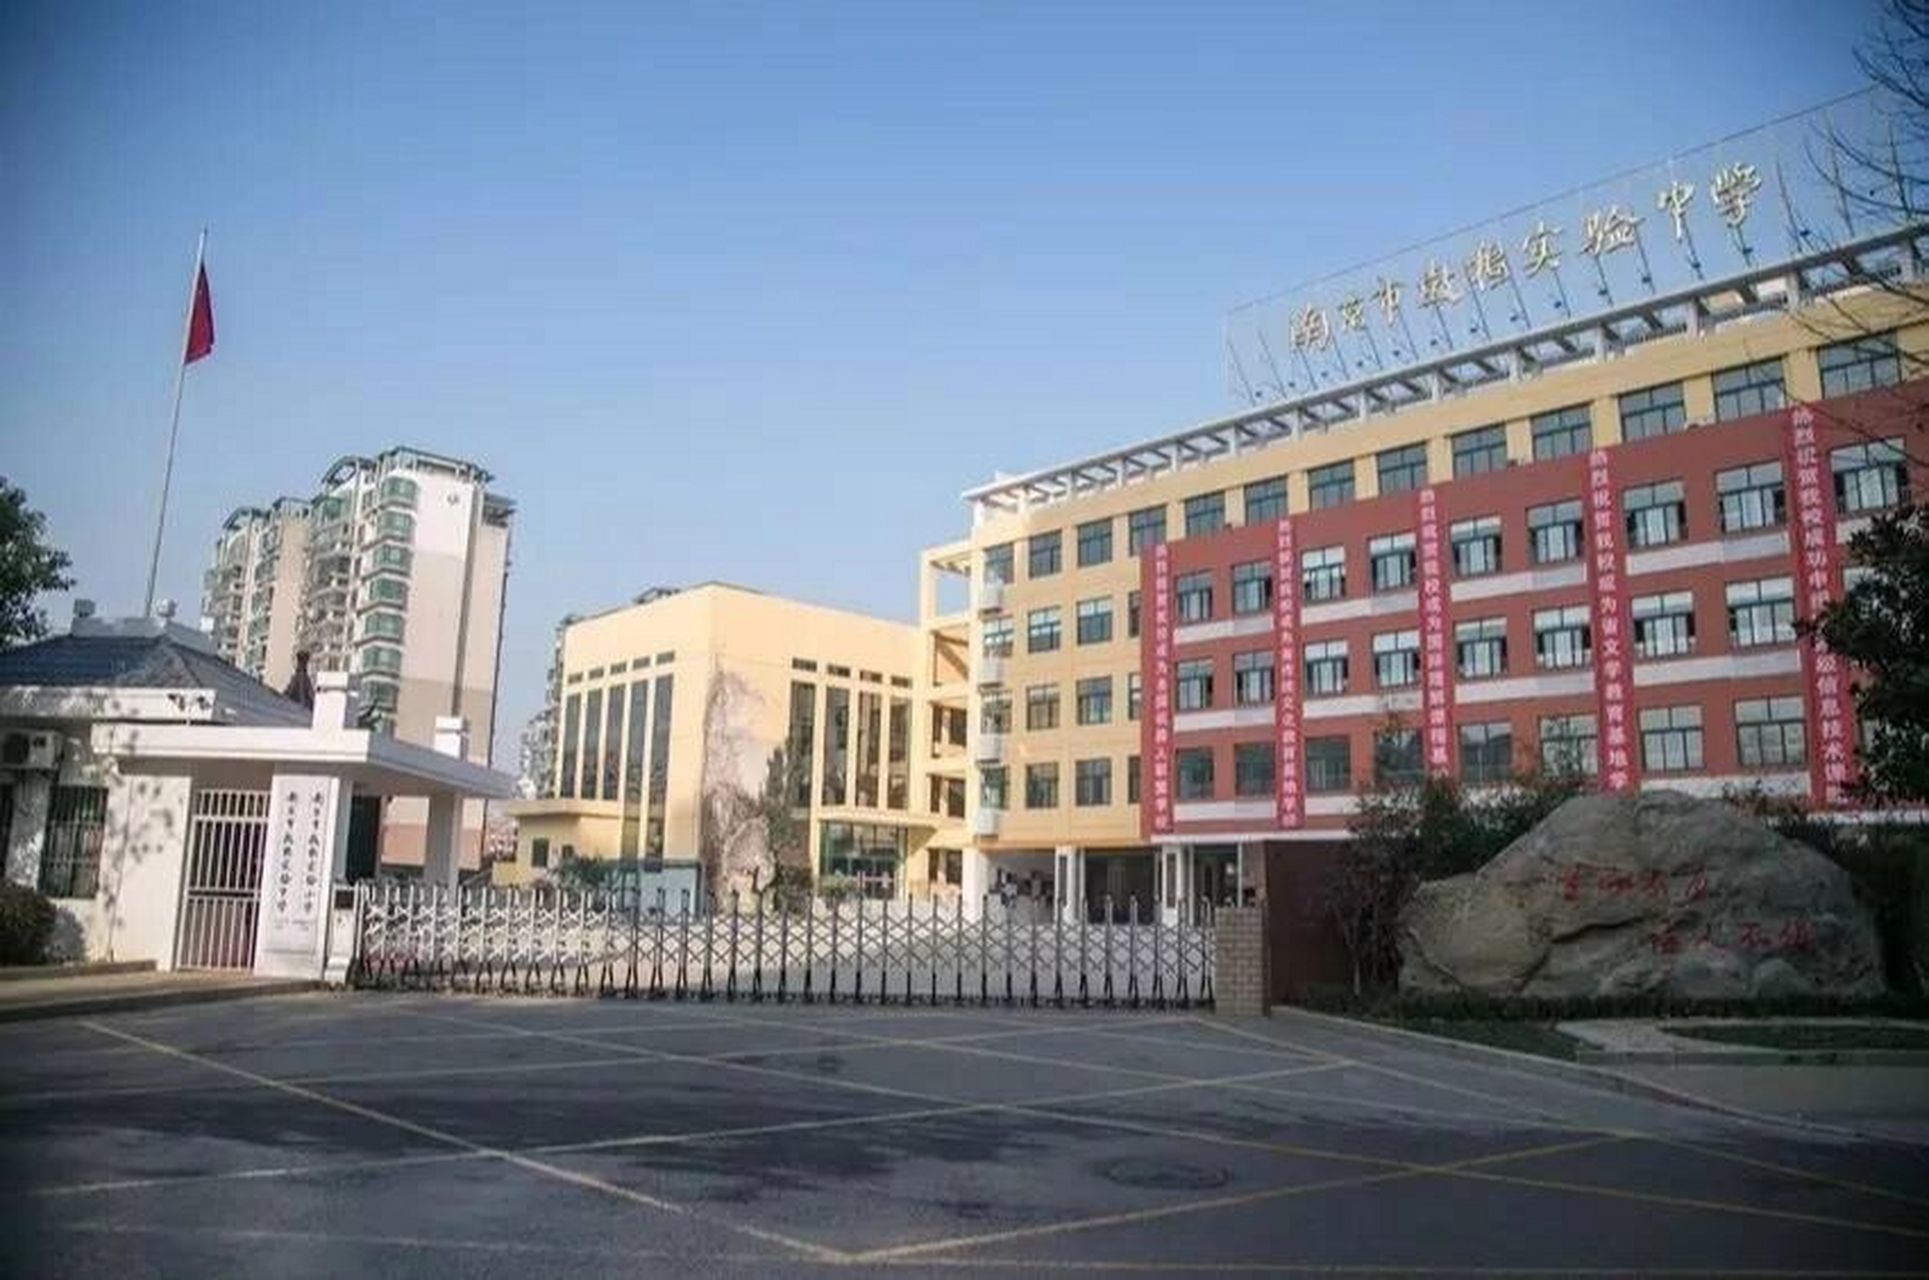 鼓楼实验中学 鼓楼区:(南京教育顶点的一个区,所以都说南京教育看鼓楼